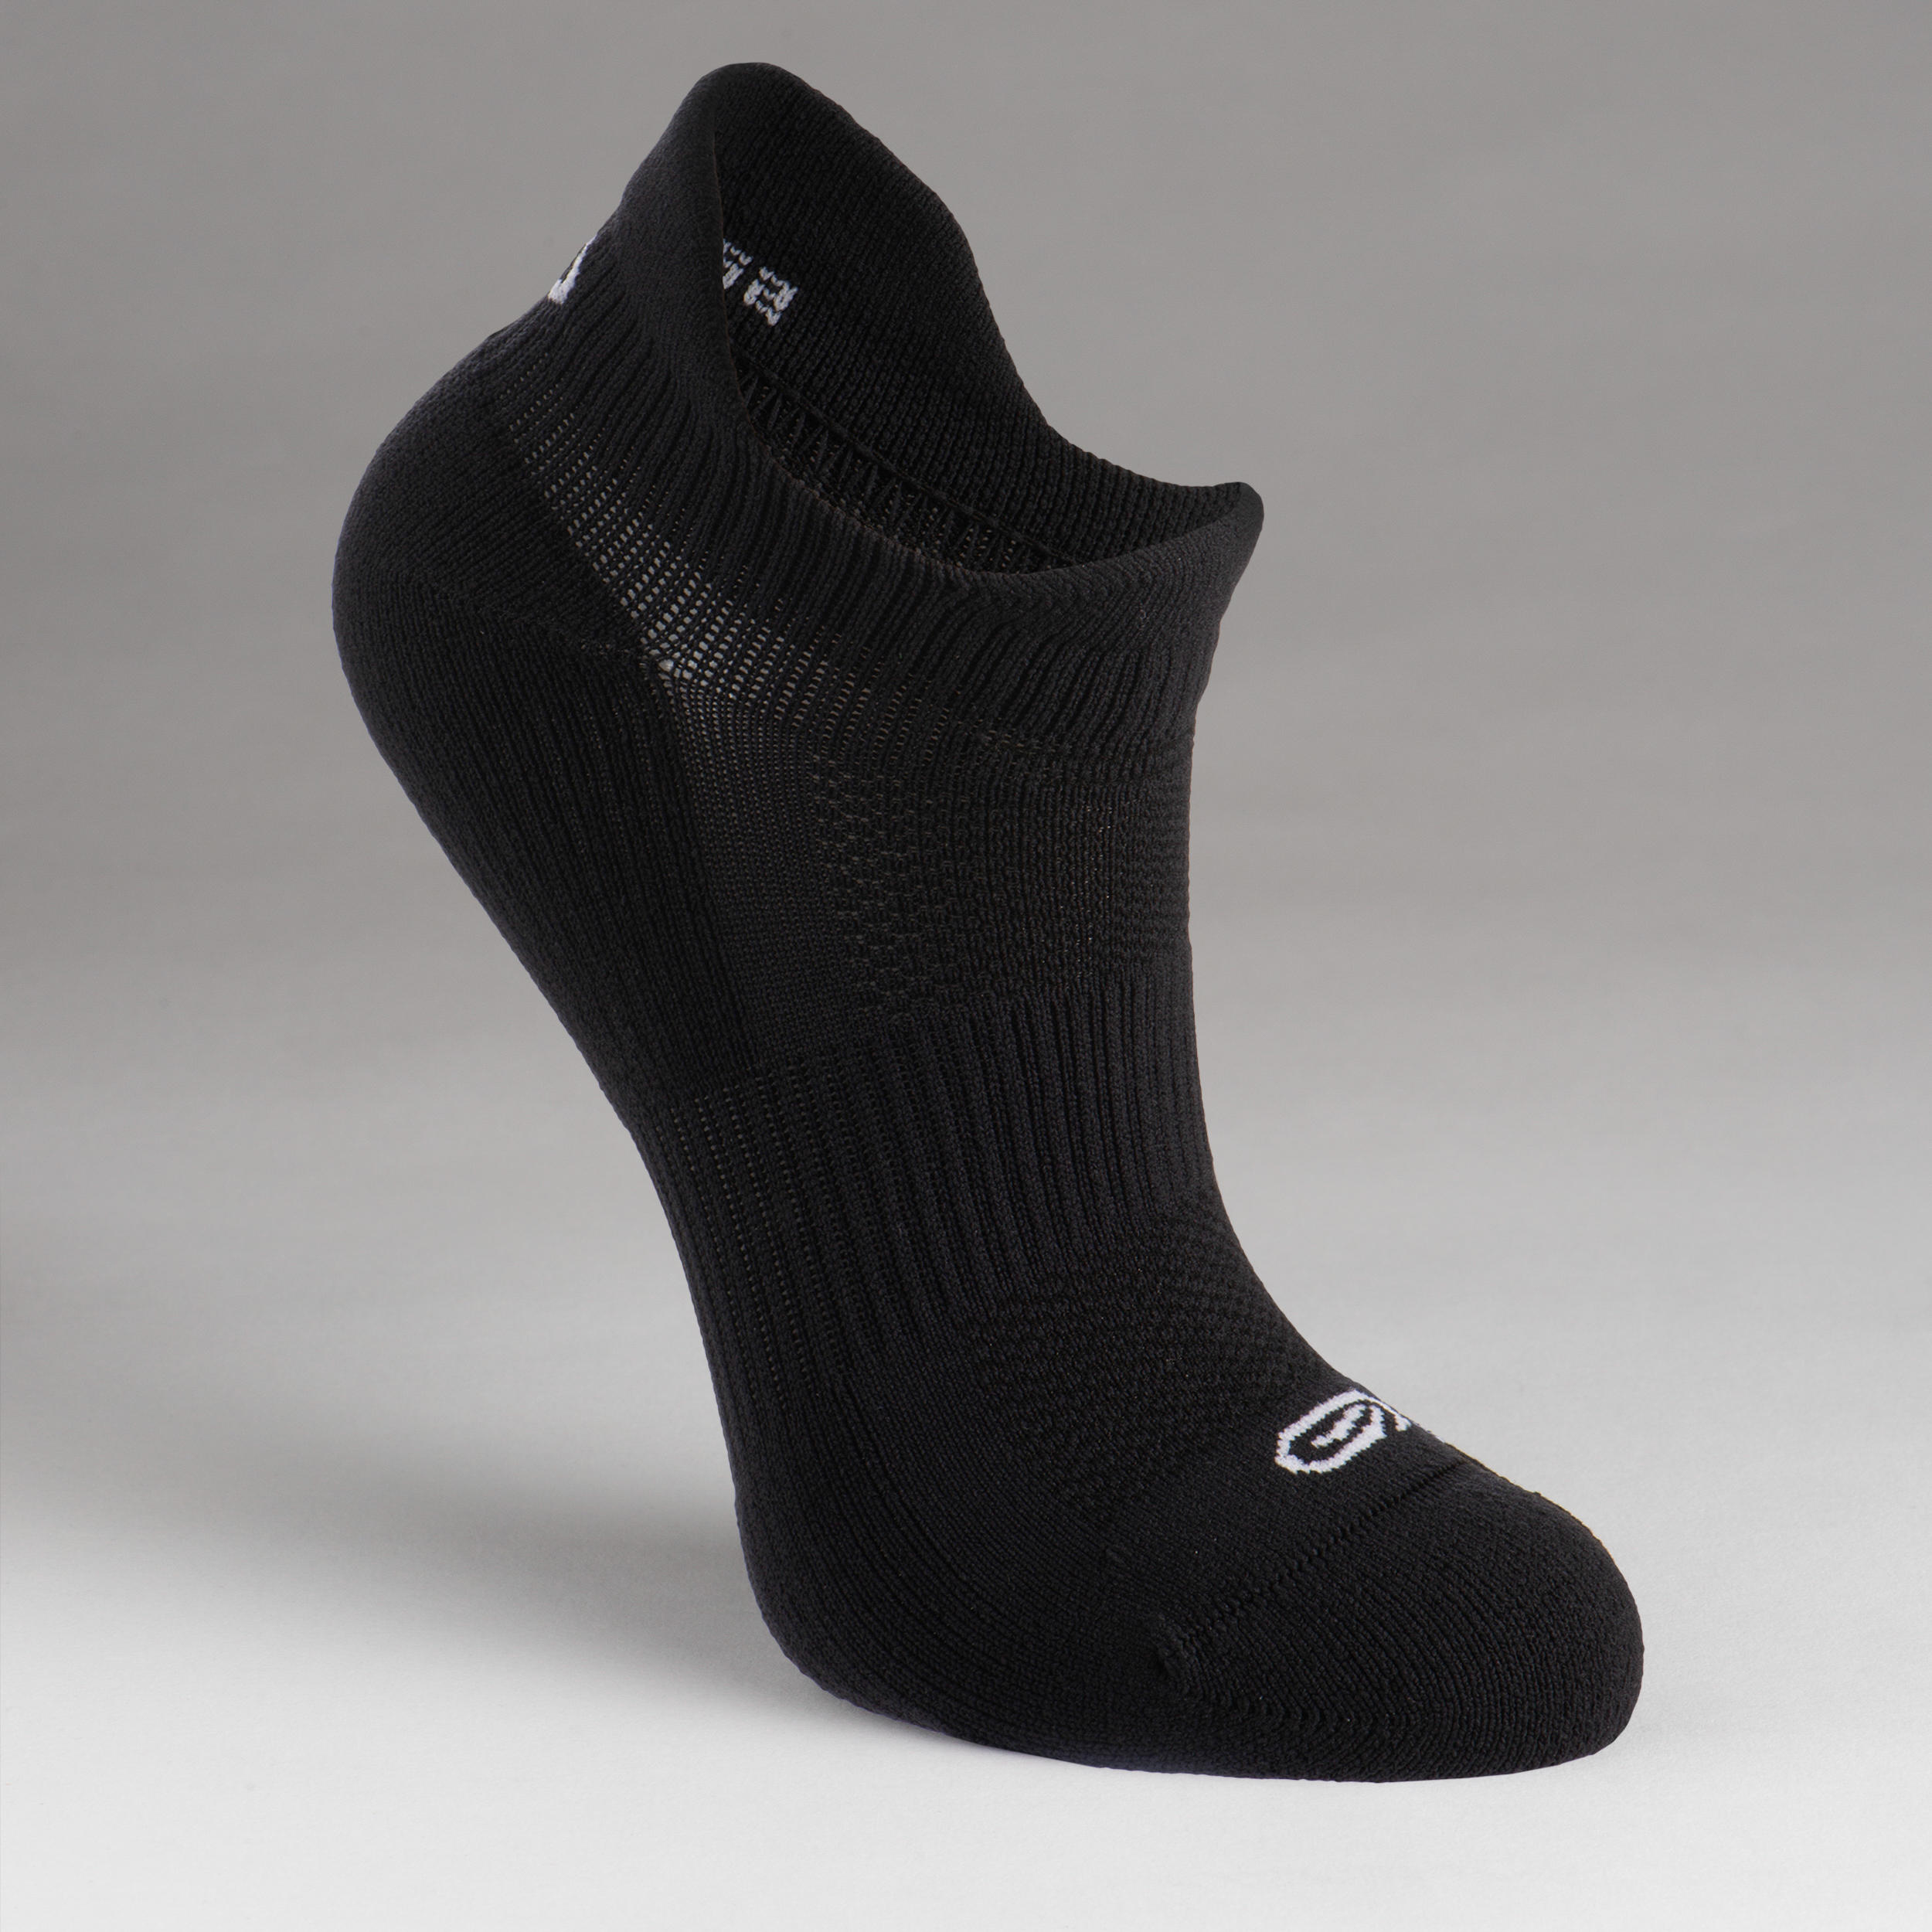 KIPRUN 500 INV kids comfort running socks 2-pack - black and white 7/9